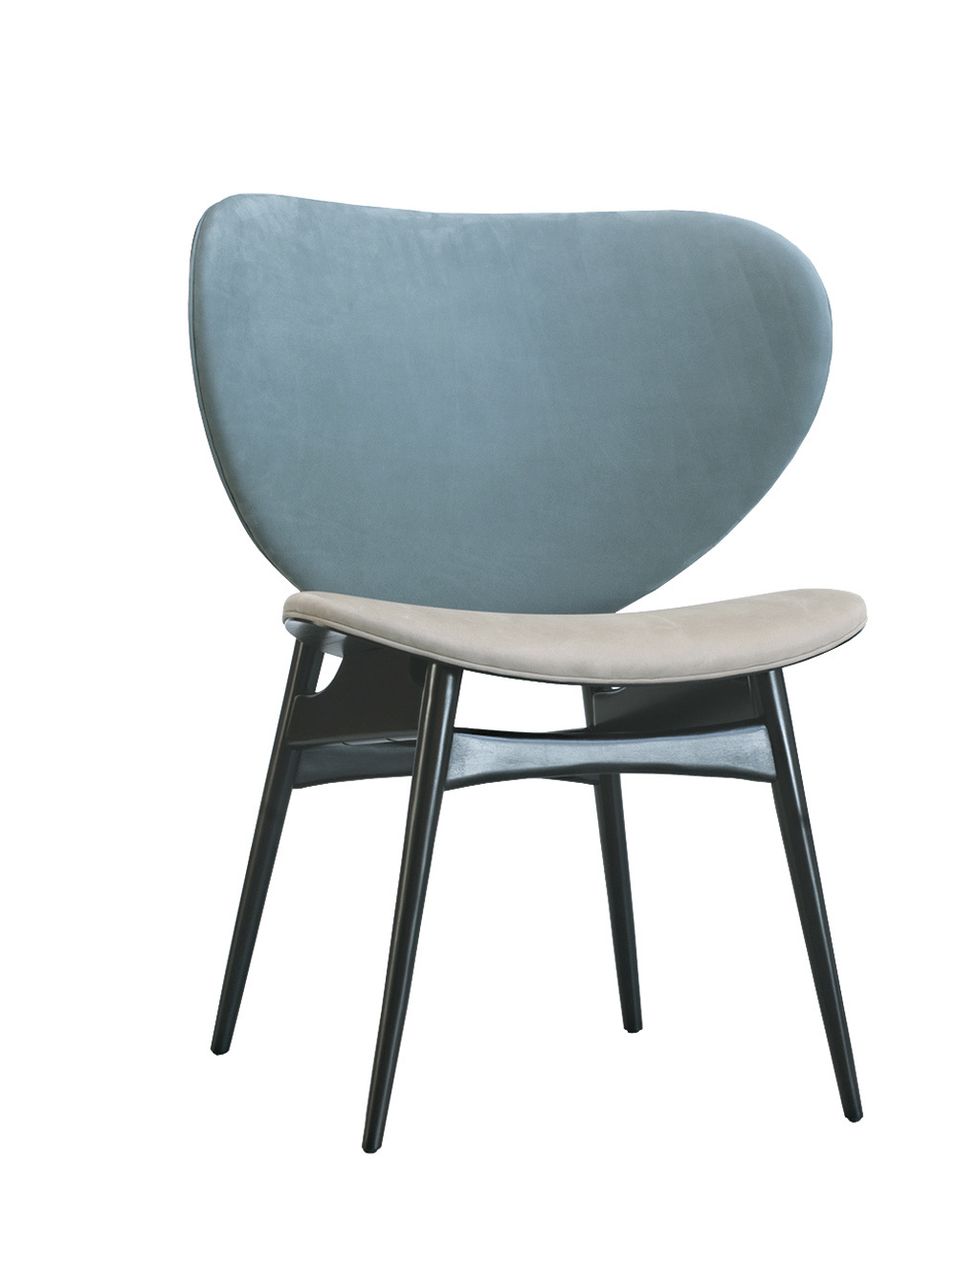 <p>Diseñada por Draga y Aurel para Baxter, la silla <i>Alma</i> es suave y extra envolvente en sus bellos tonos empolvados. ¡No te querrás levantar de ella! <a href="http://www.baxter.it" target="_blank">www.baxter.it</a></p>